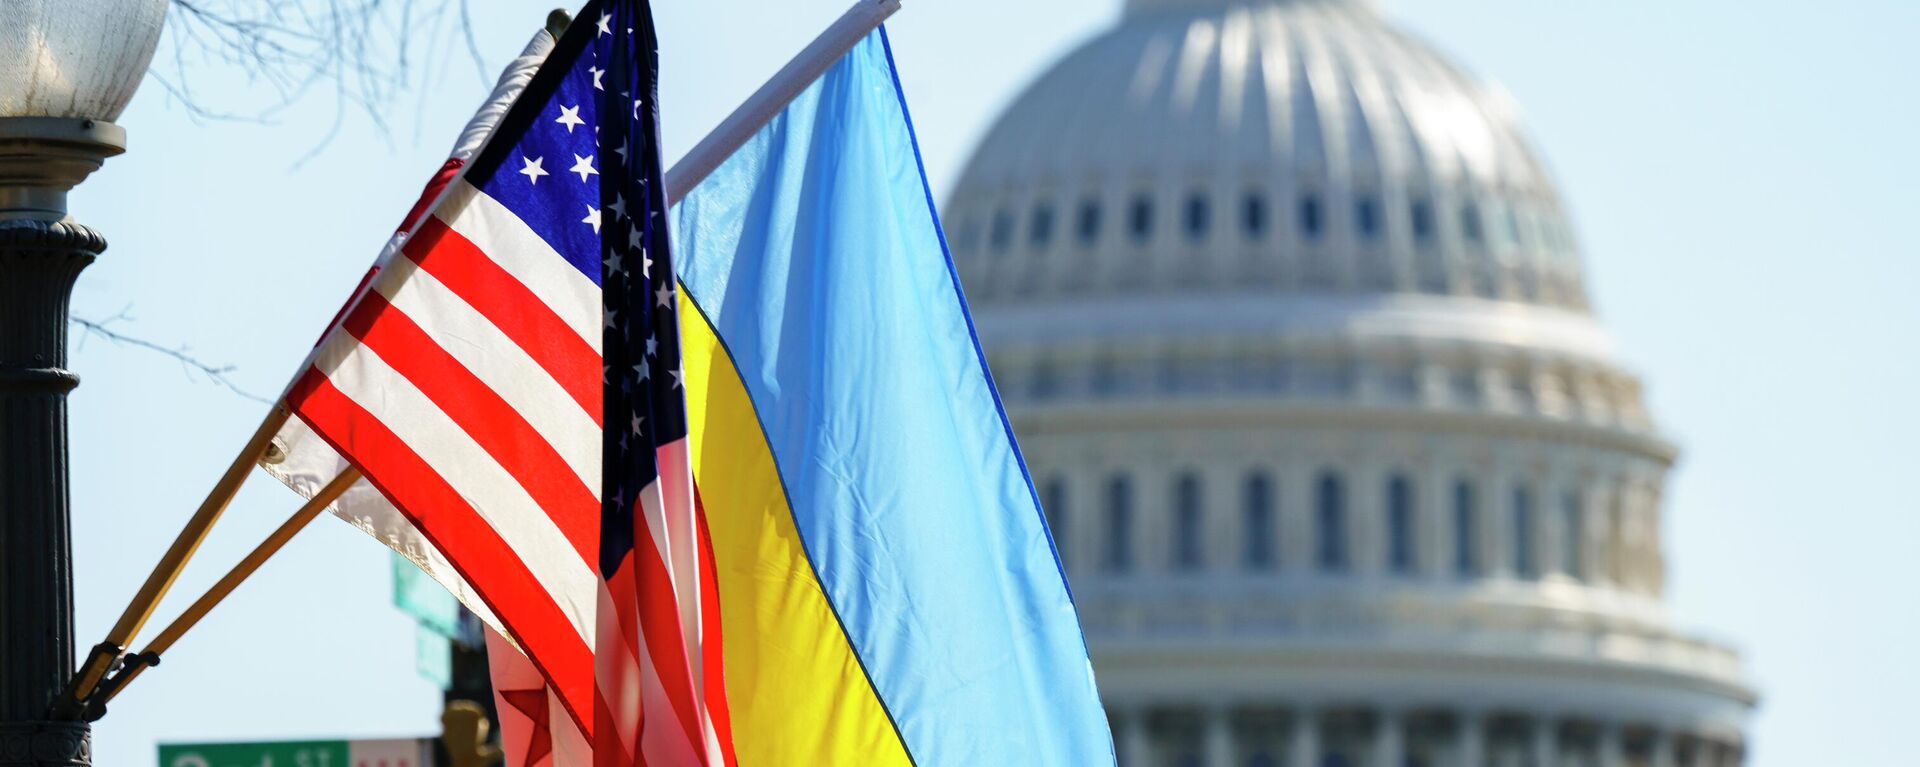 Cờ của Ukraina và Hoa Kỳ tại tòa nhà Capitol ở Washington - Sputnik Việt Nam, 1920, 22.12.2022